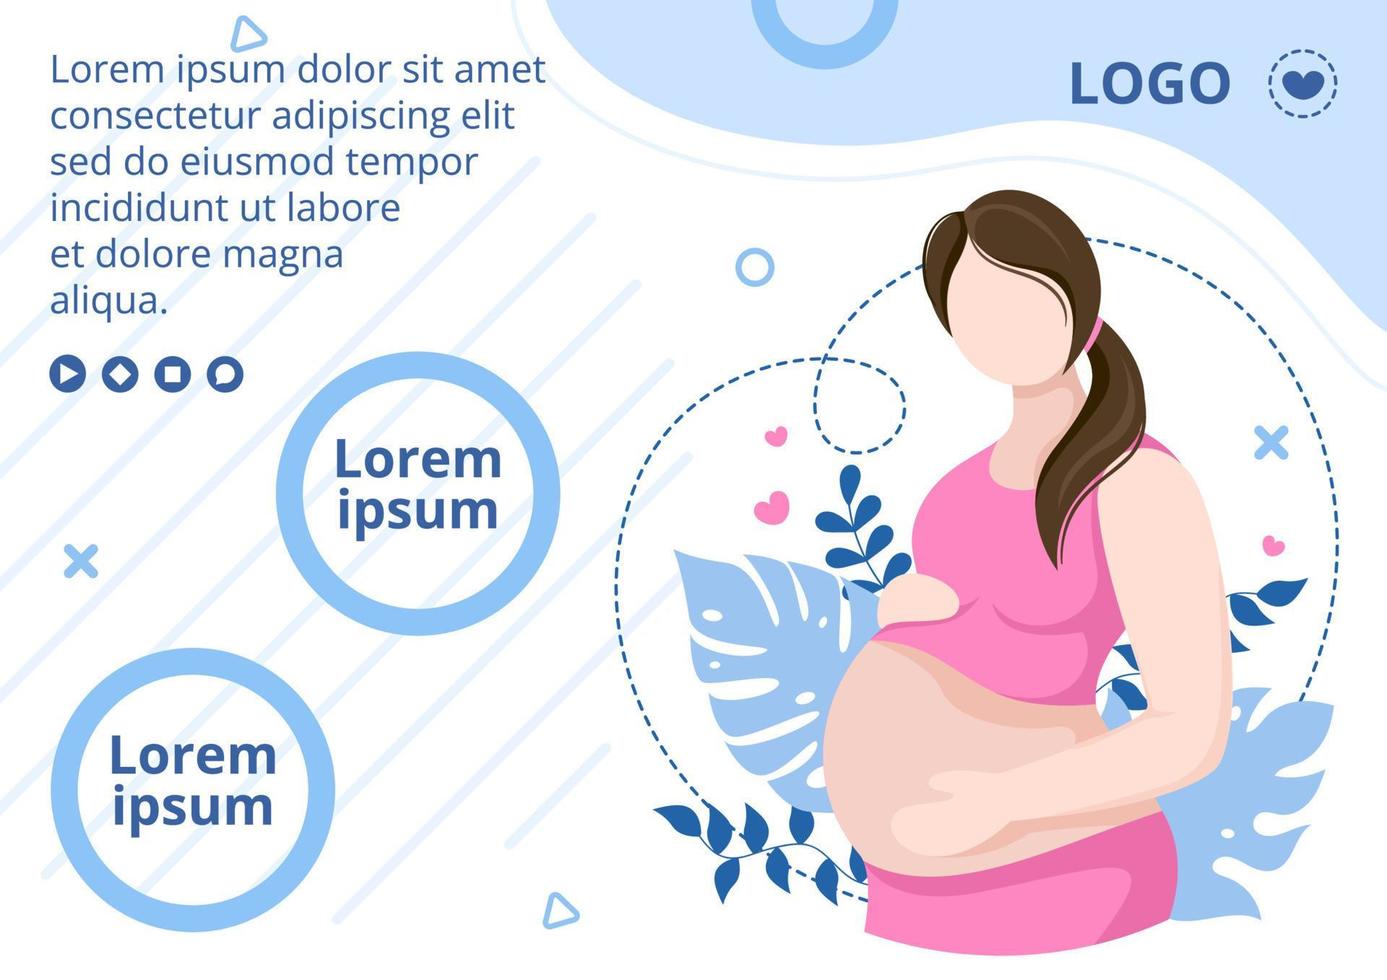 mujer embarazada o madre folleto plantilla de atención médica diseño plano ilustración editable de fondo cuadrado para redes sociales o tarjeta de saludos vector